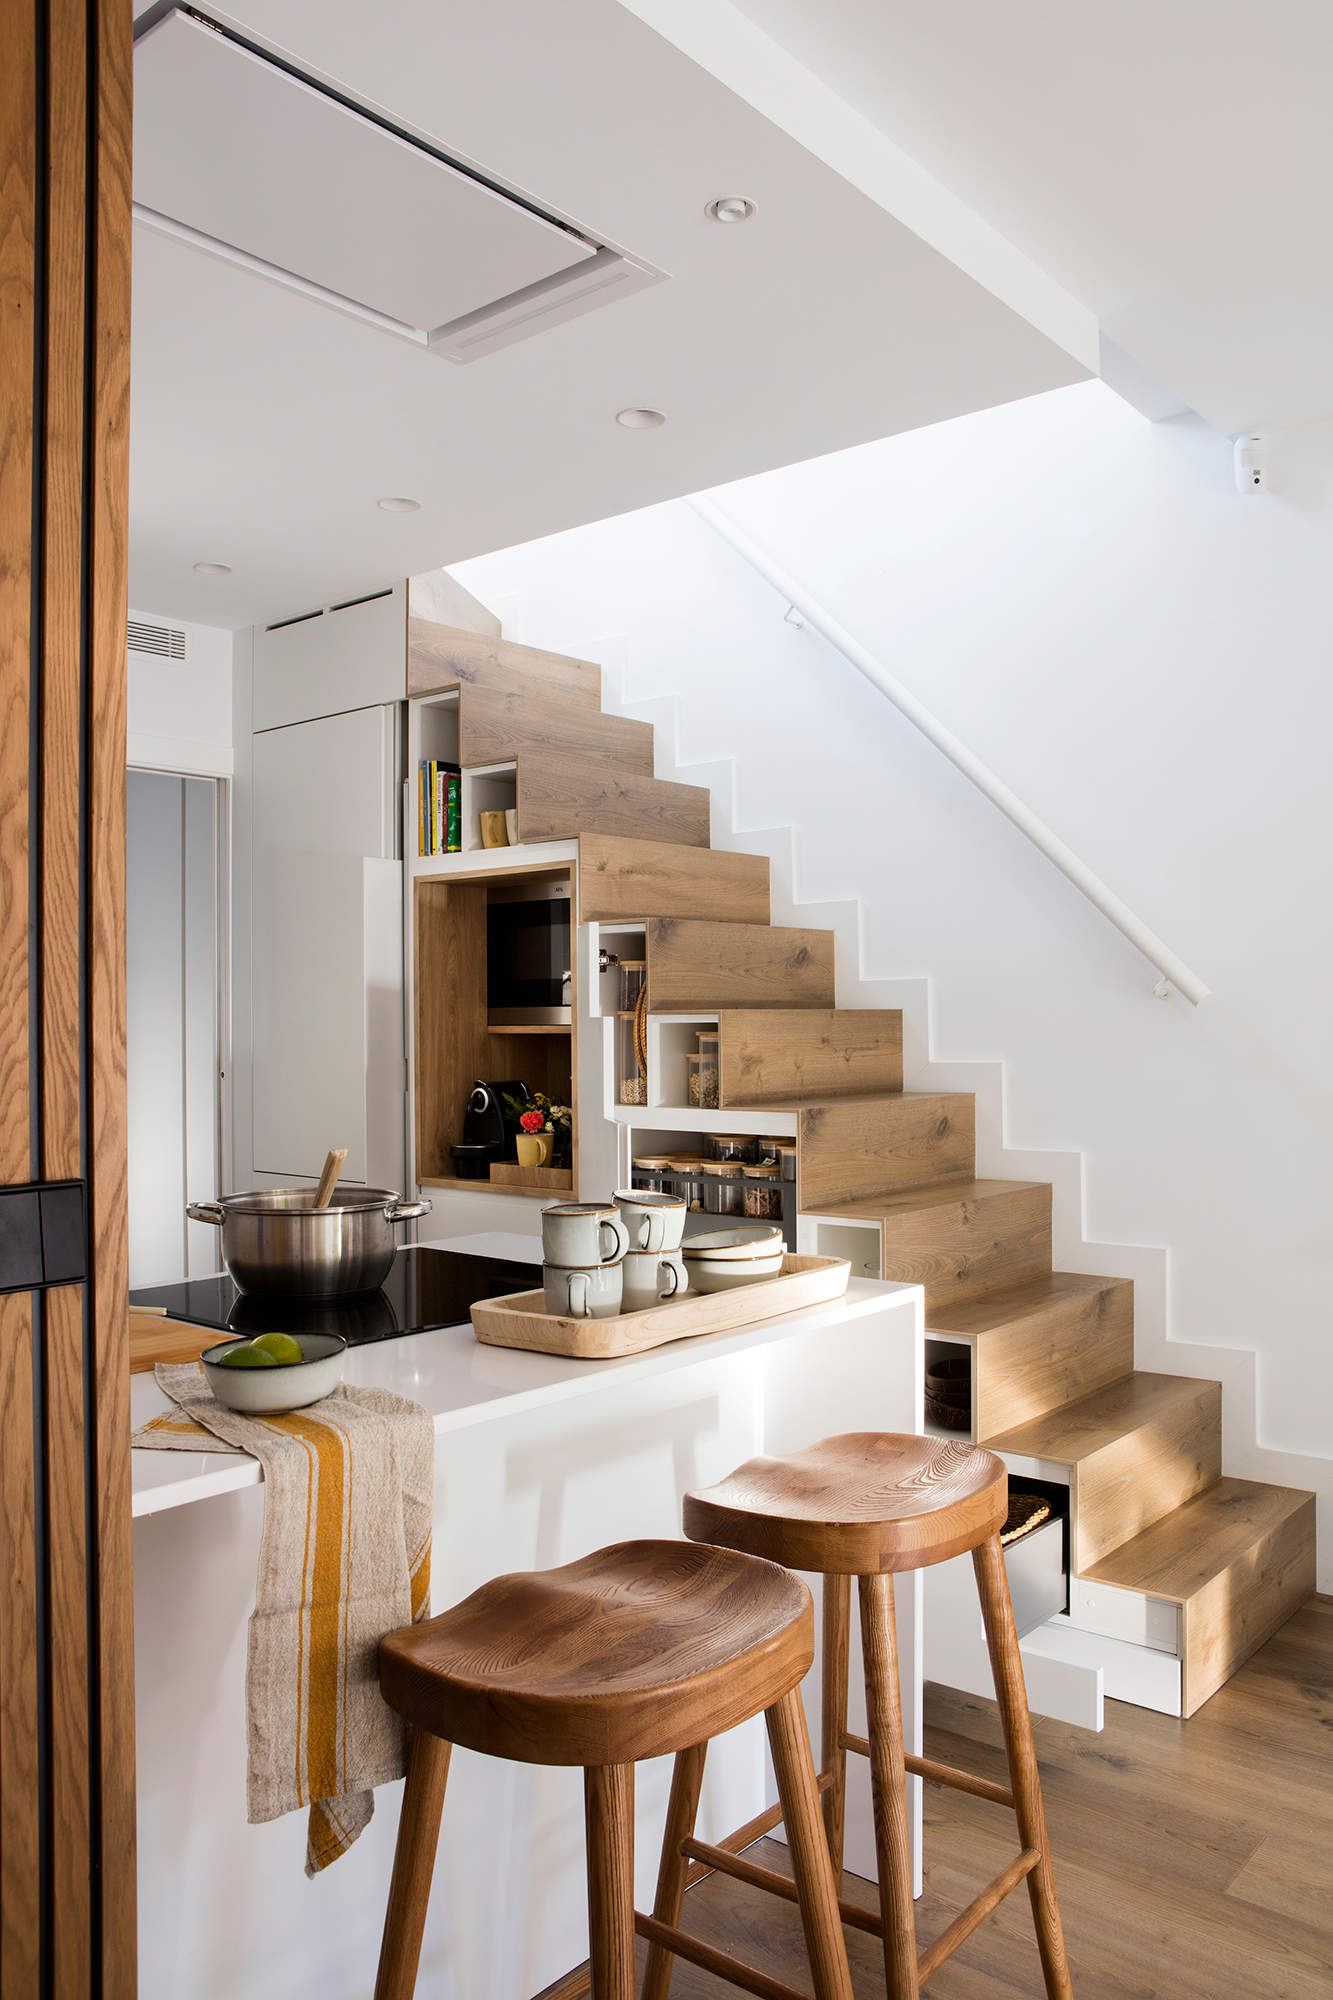 Cocina abierta con escalera integrada en uso en la cocina